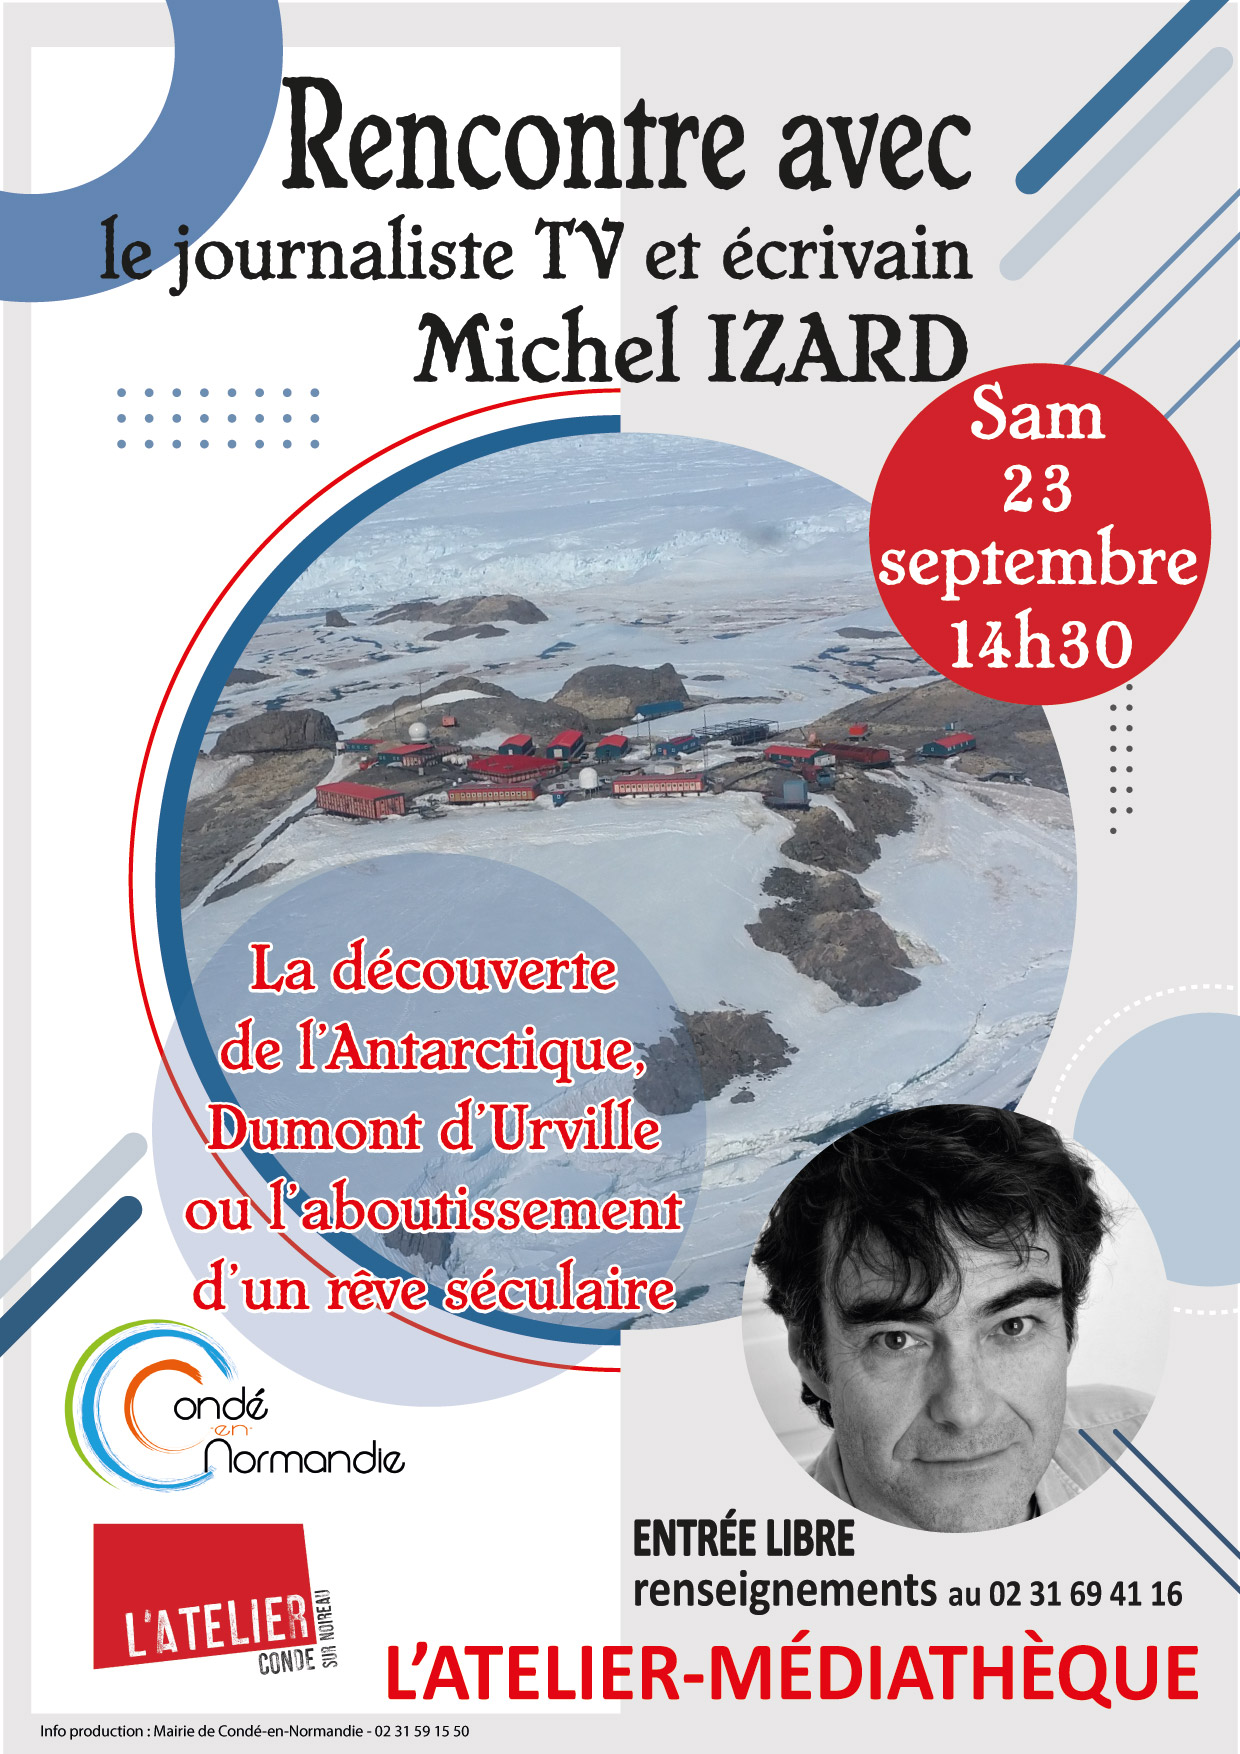 Rencontre avec Michel Izard